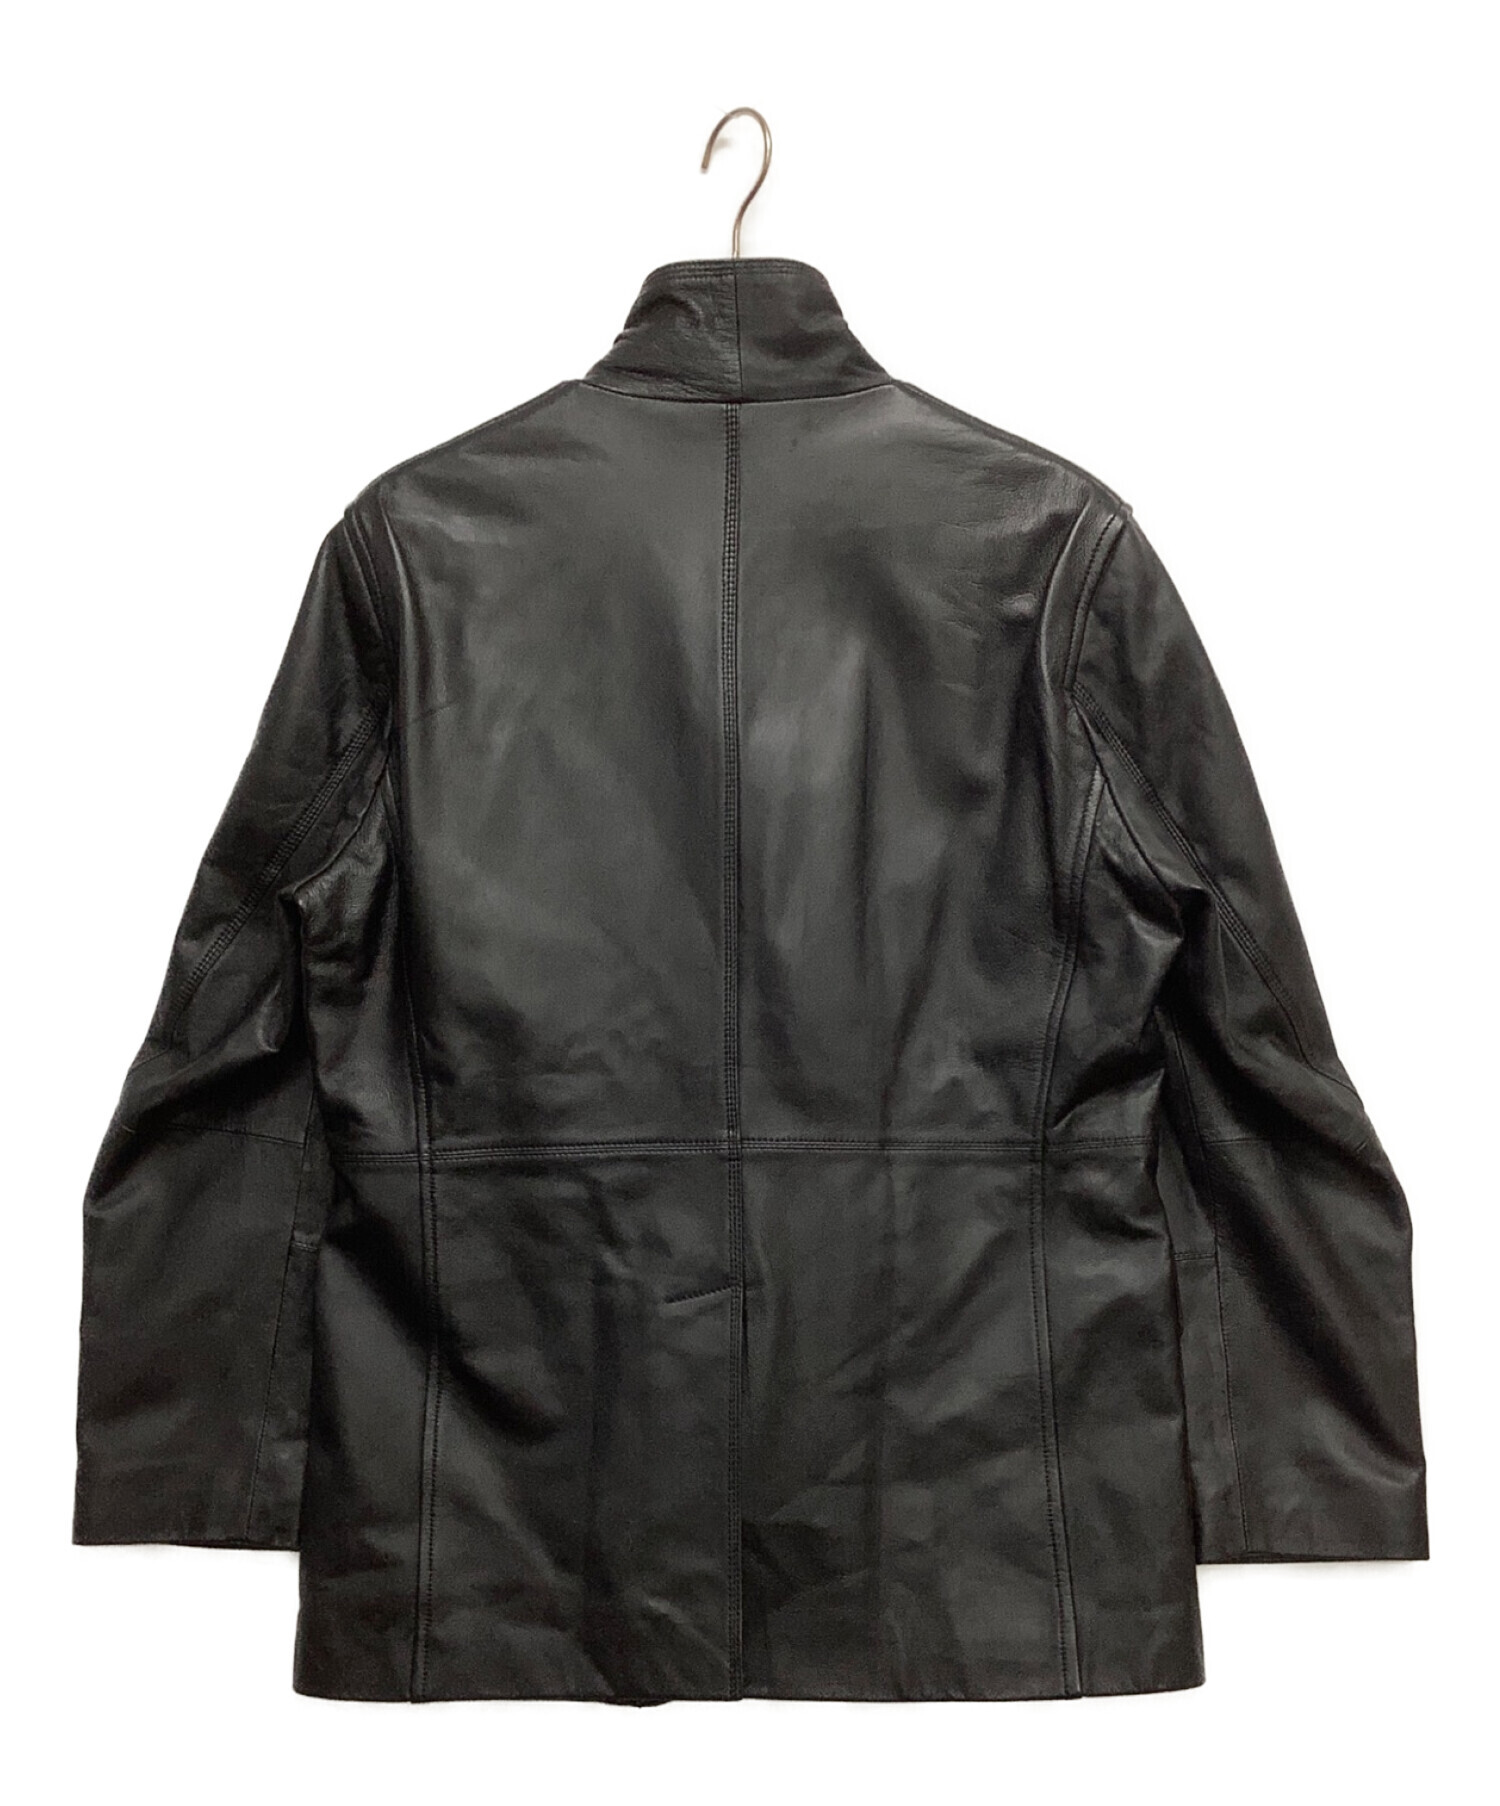 G-Stage (ジーステージ) レザージャケット ブラック サイズ:XL